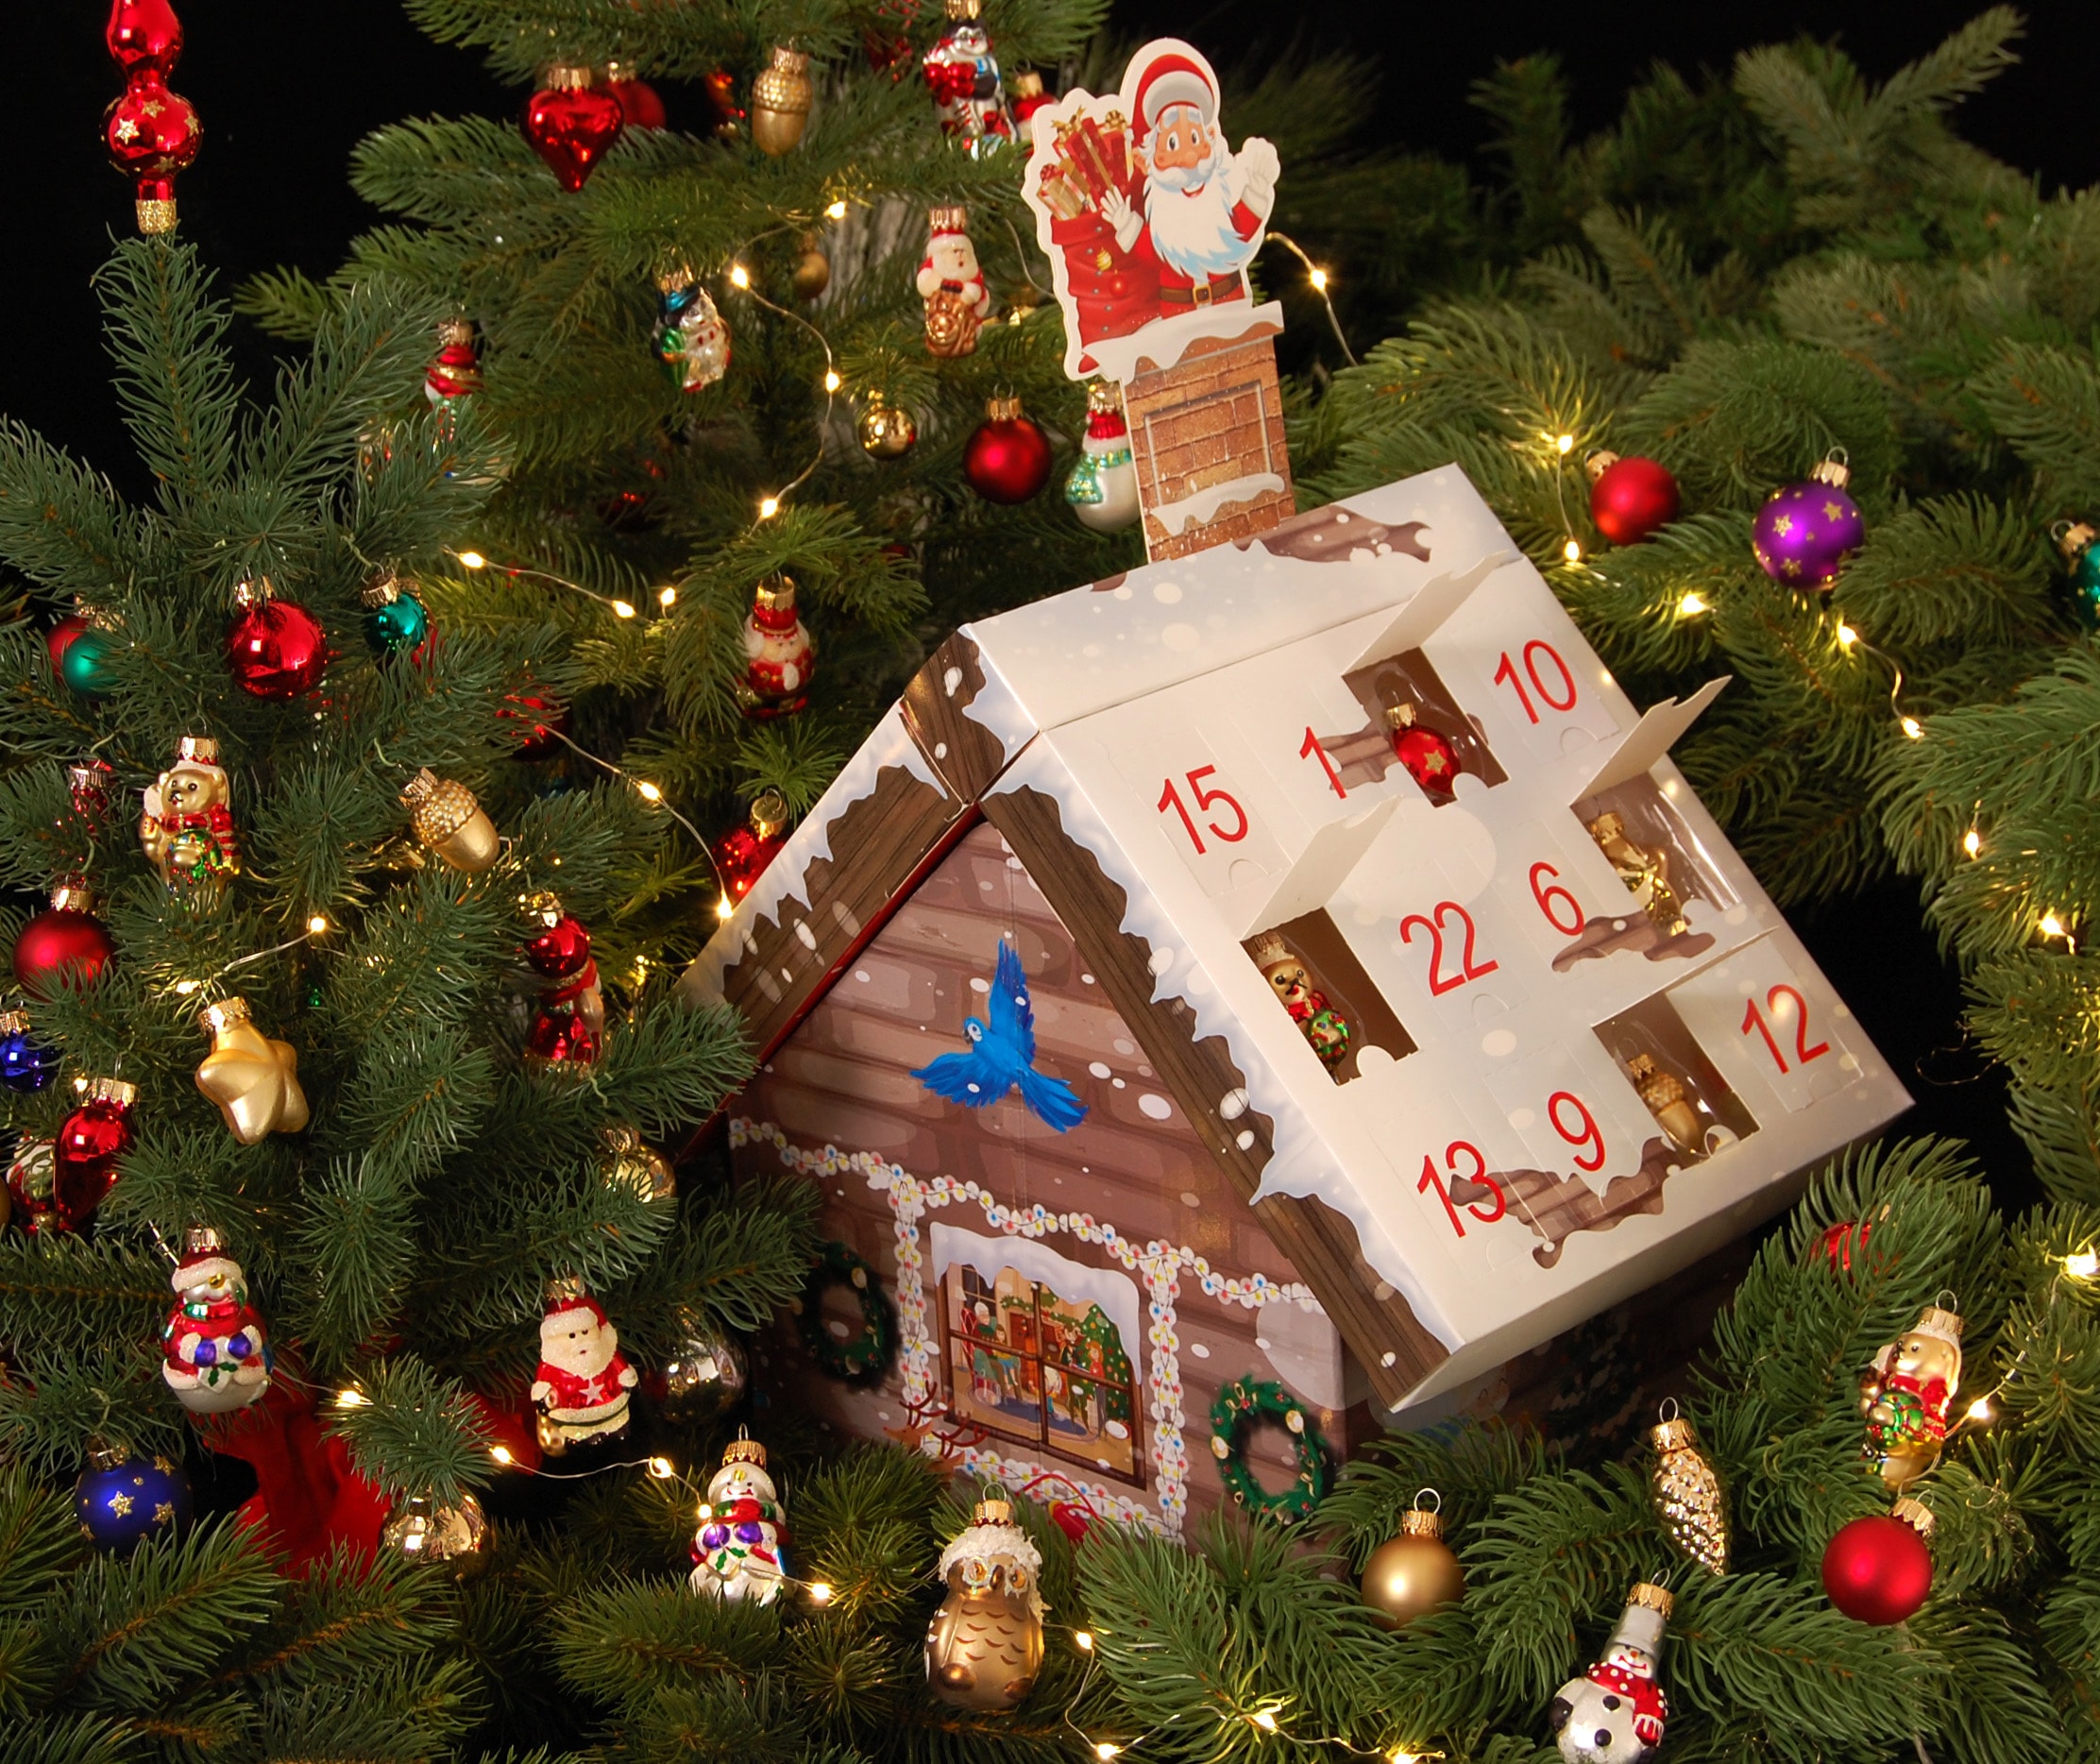 %Sale home im Weihnachtsdeko«, Mini-Glaskugeln »Roana, Adventskalender my Minifiguren, handdekorierte Adventskalender-Haus für Erwachsene, jetzt mit